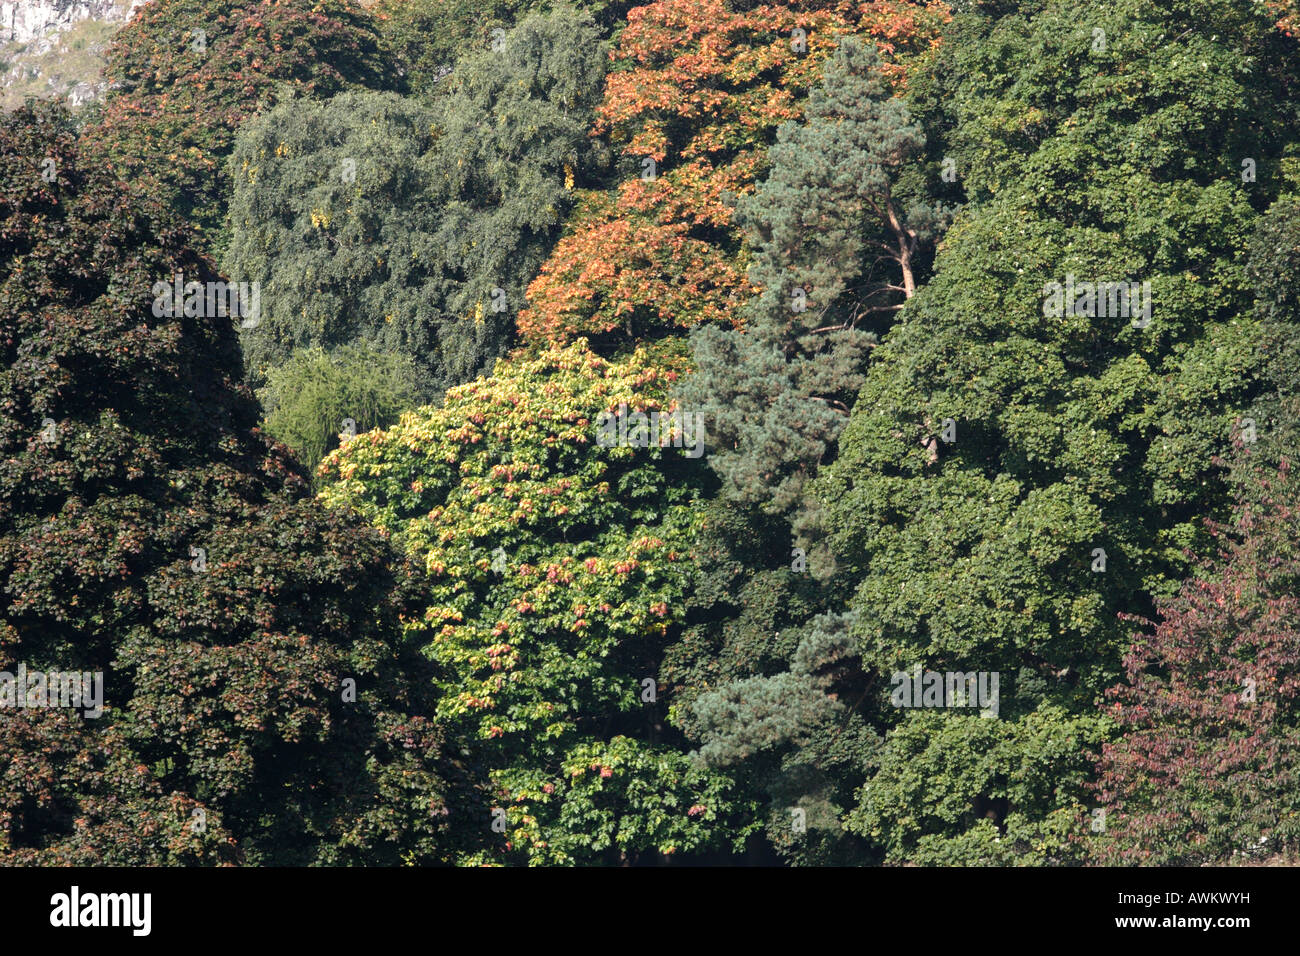 Eine Mischung aus Laub- und Nadelholz Bäume mit dem ersten paar Blätter mit Blick auf die Farben des Herbstes. Stockfoto